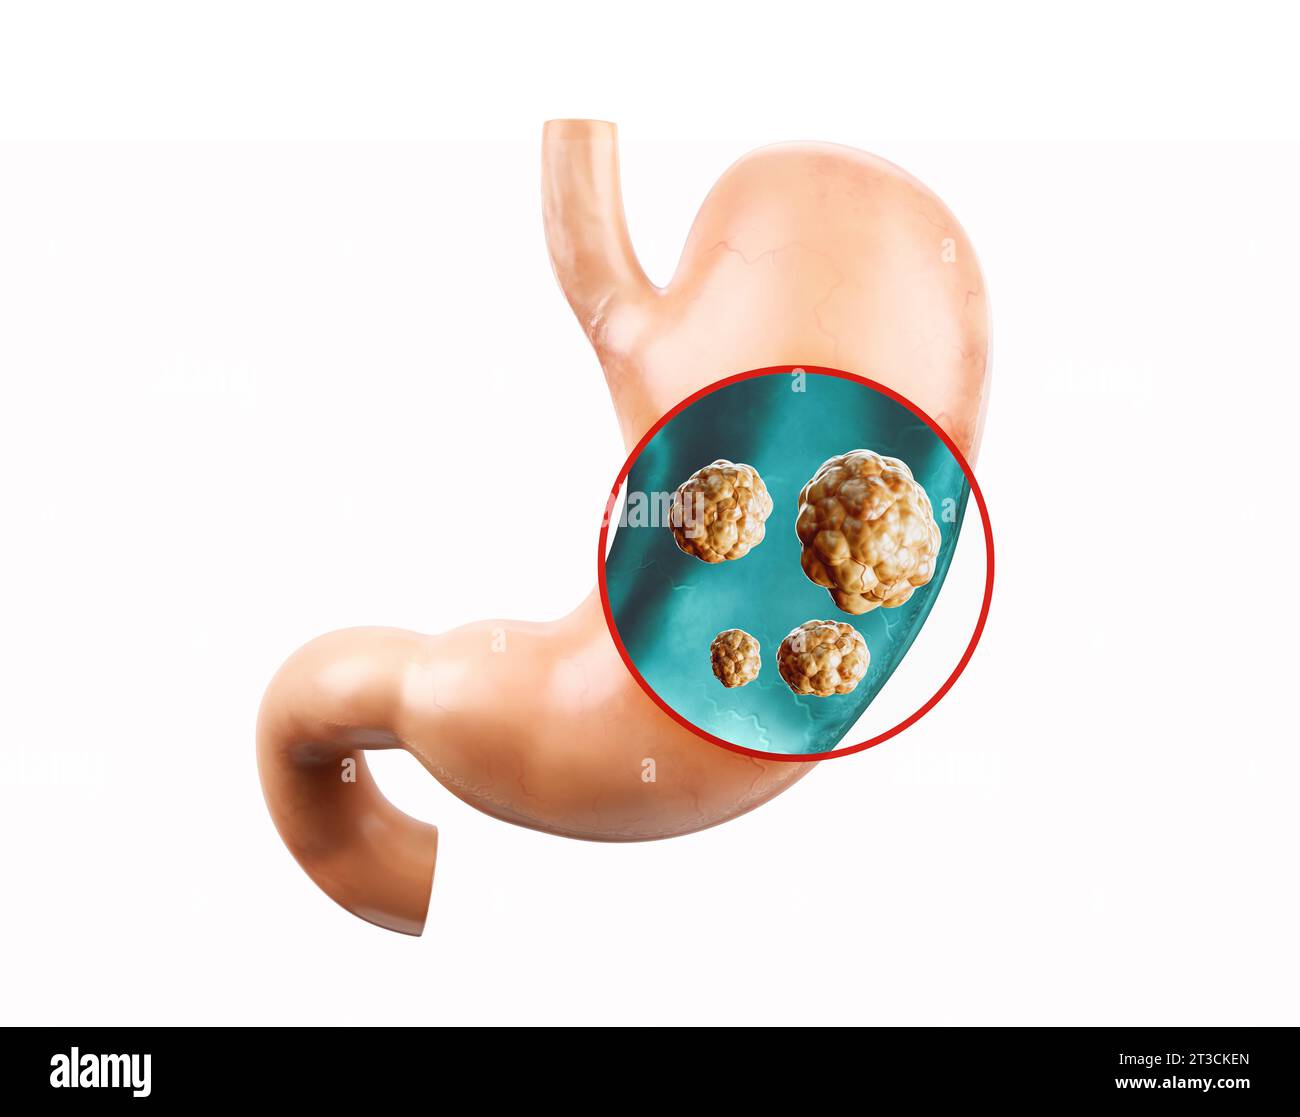 Anatomie de l'illustration réaliste 3d de l'organe interne humain - estomac. Estomac humain avec radiographie du duodénum pour cancer Banque D'Images